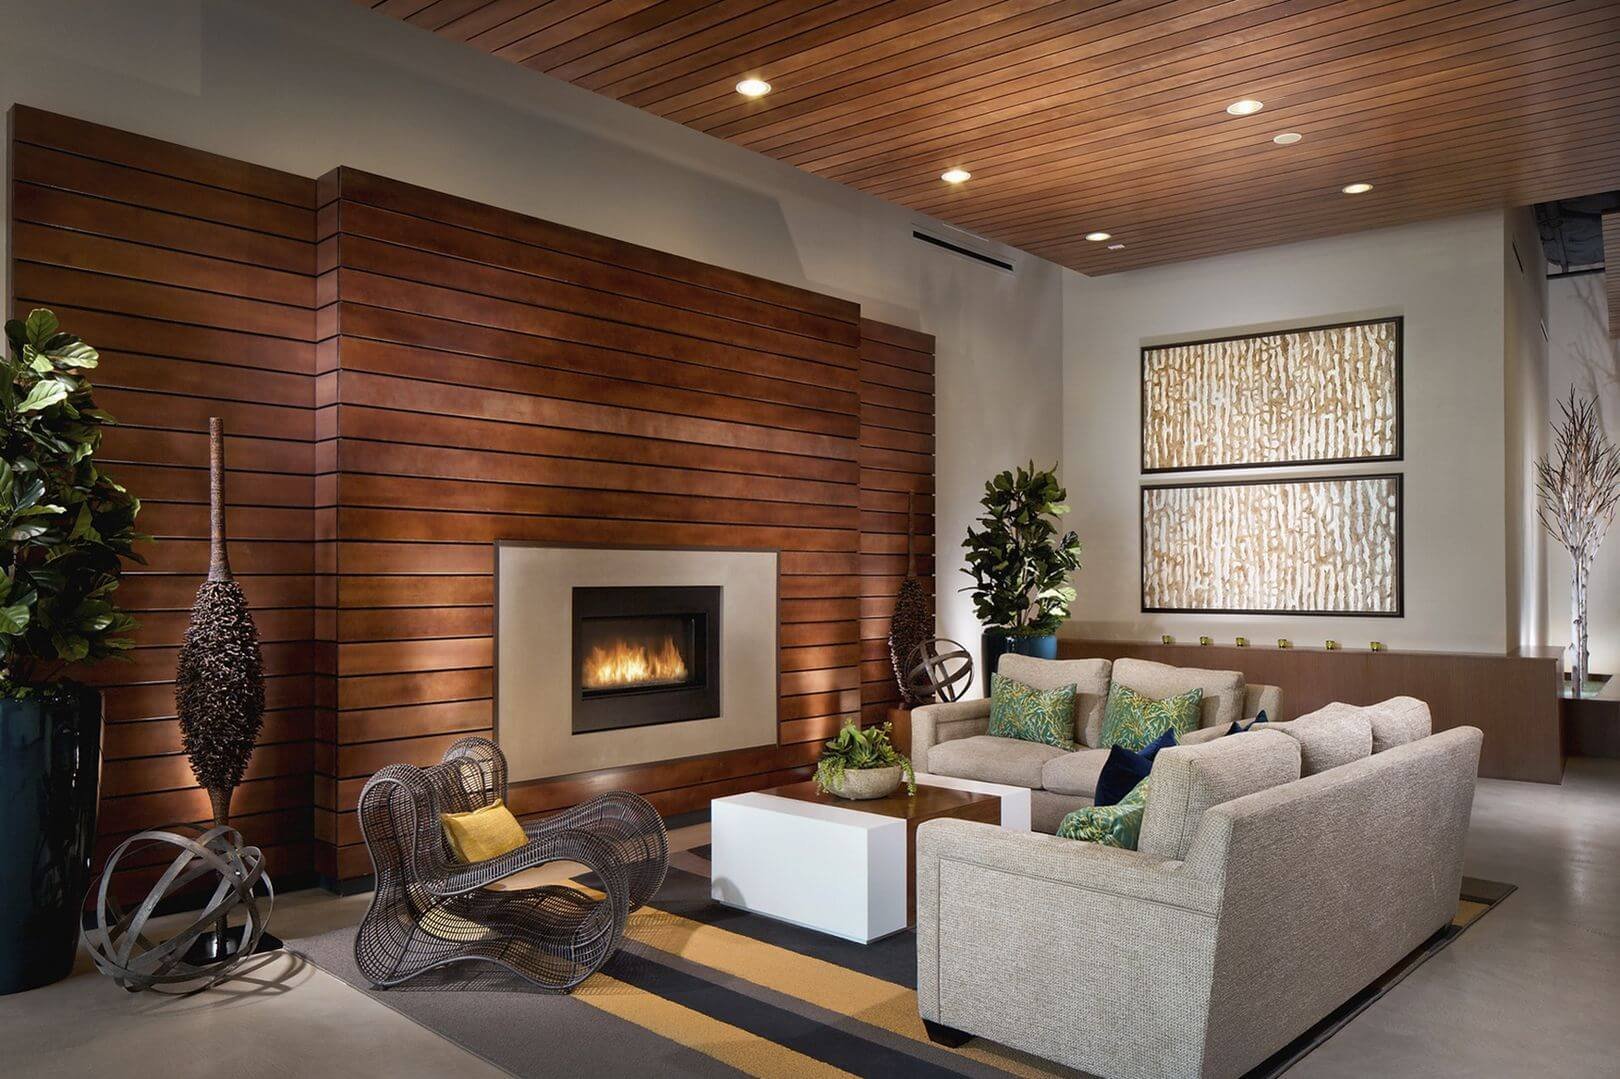 Отделка стен деревом: деревянная стена в интерьере квартиры, как сделать своими руками, дизайн из досок, фото